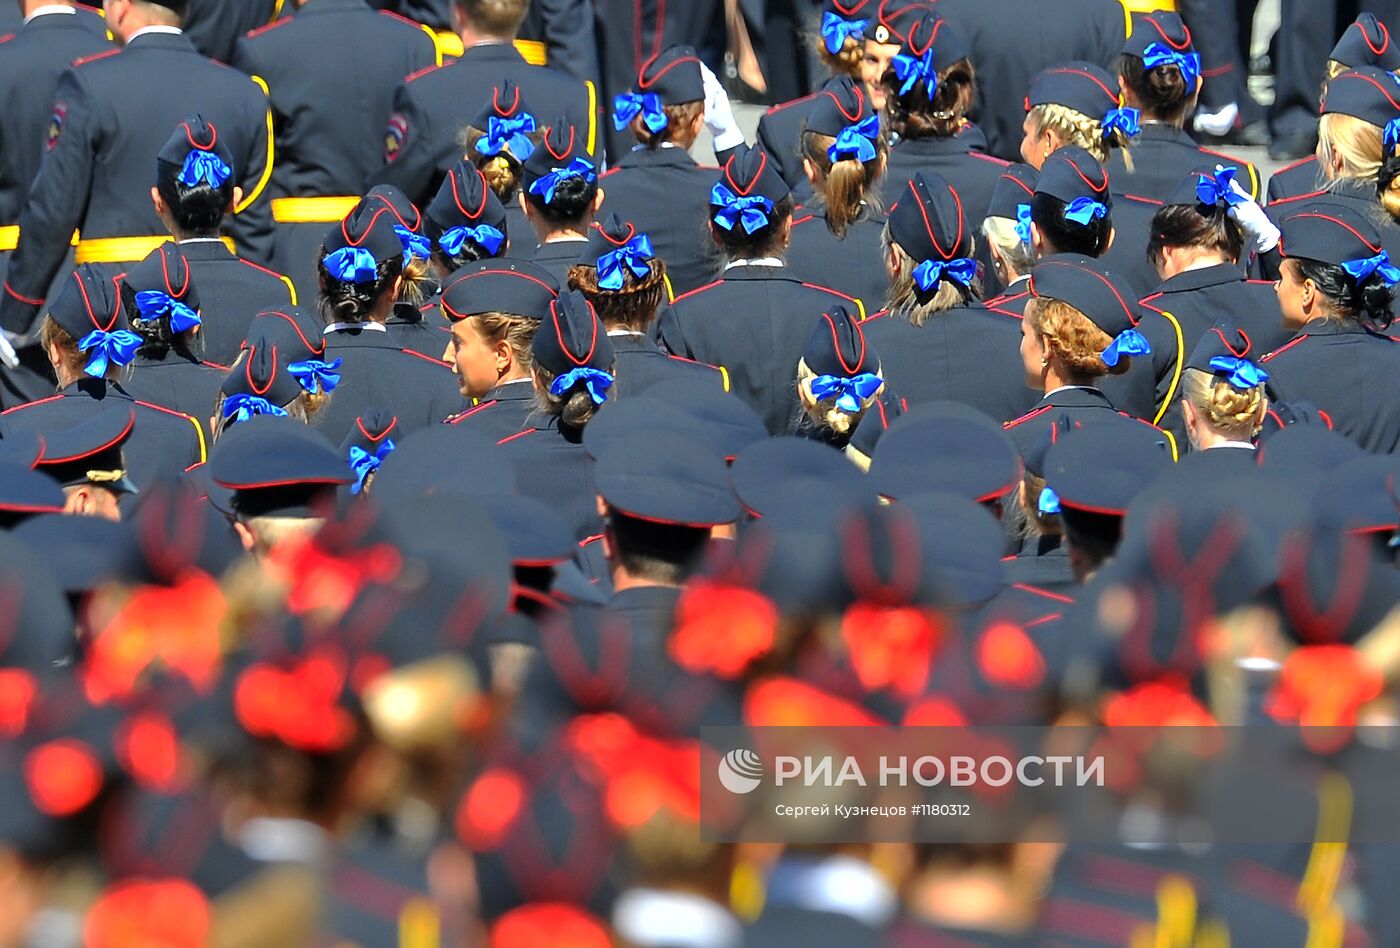 Вручение дипломов выпускникам Московского университета МВД РФ